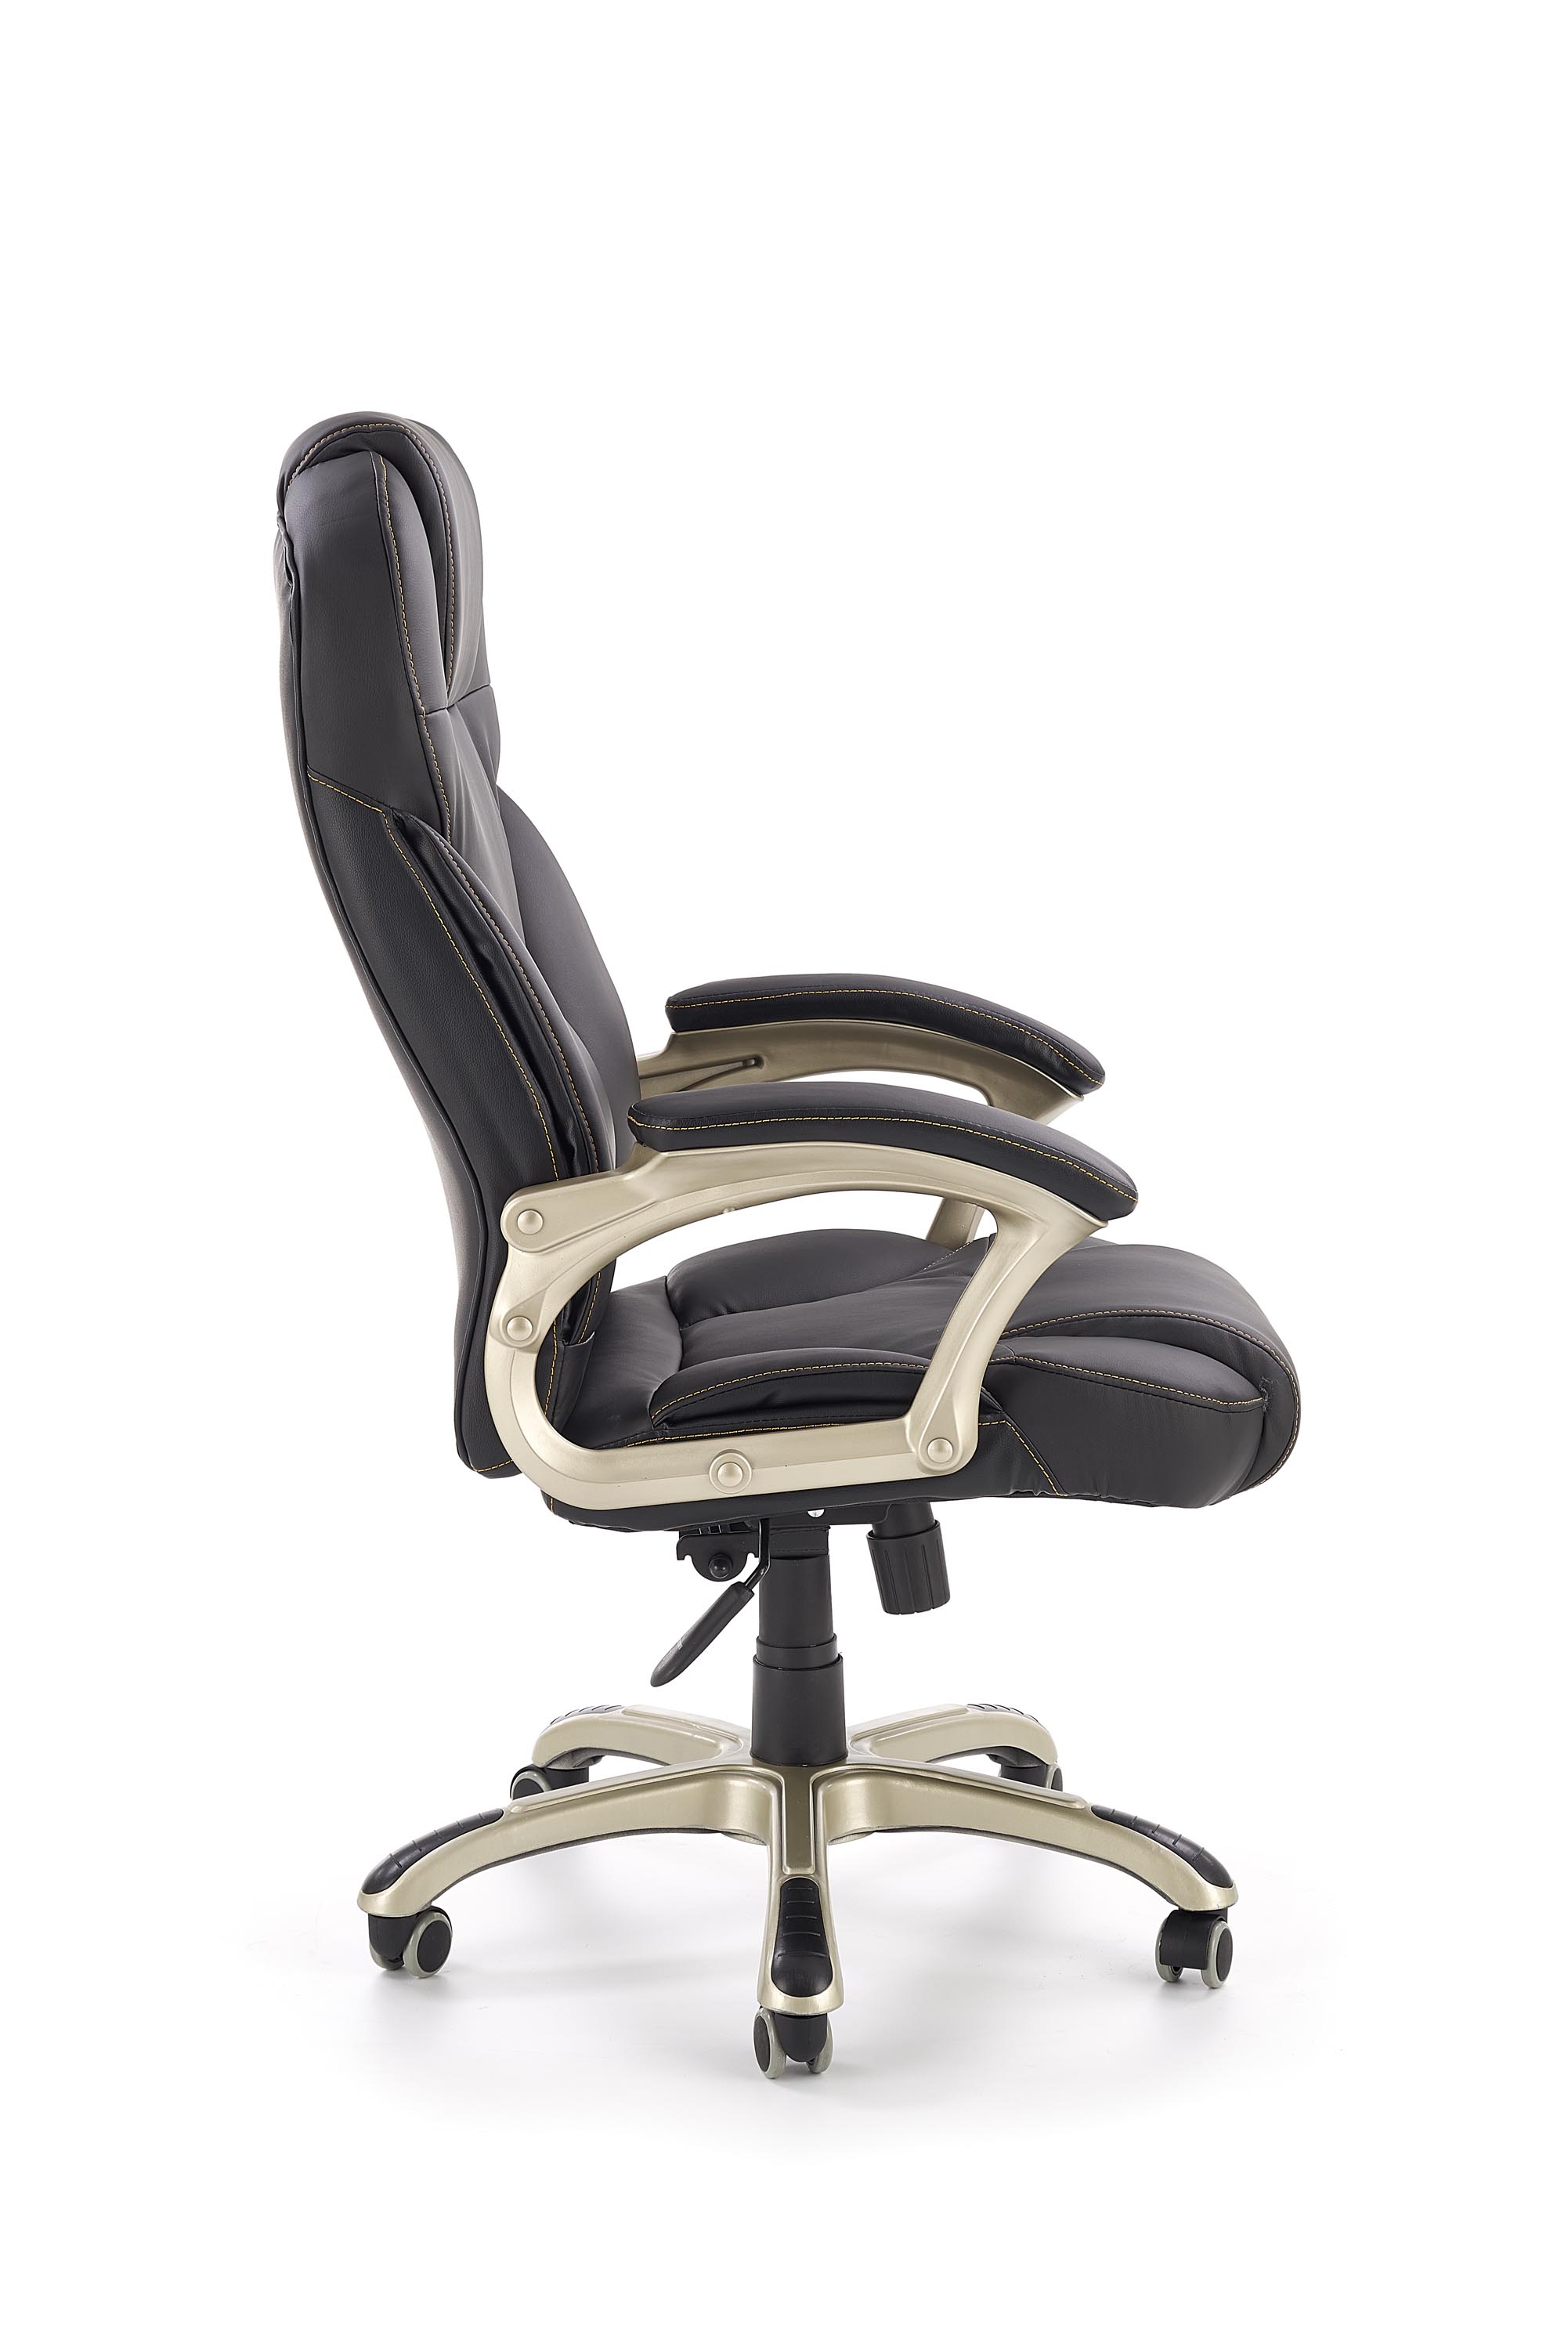 Desmond irodai szék - fekete Kancelářske křeslo desmond - Fekete